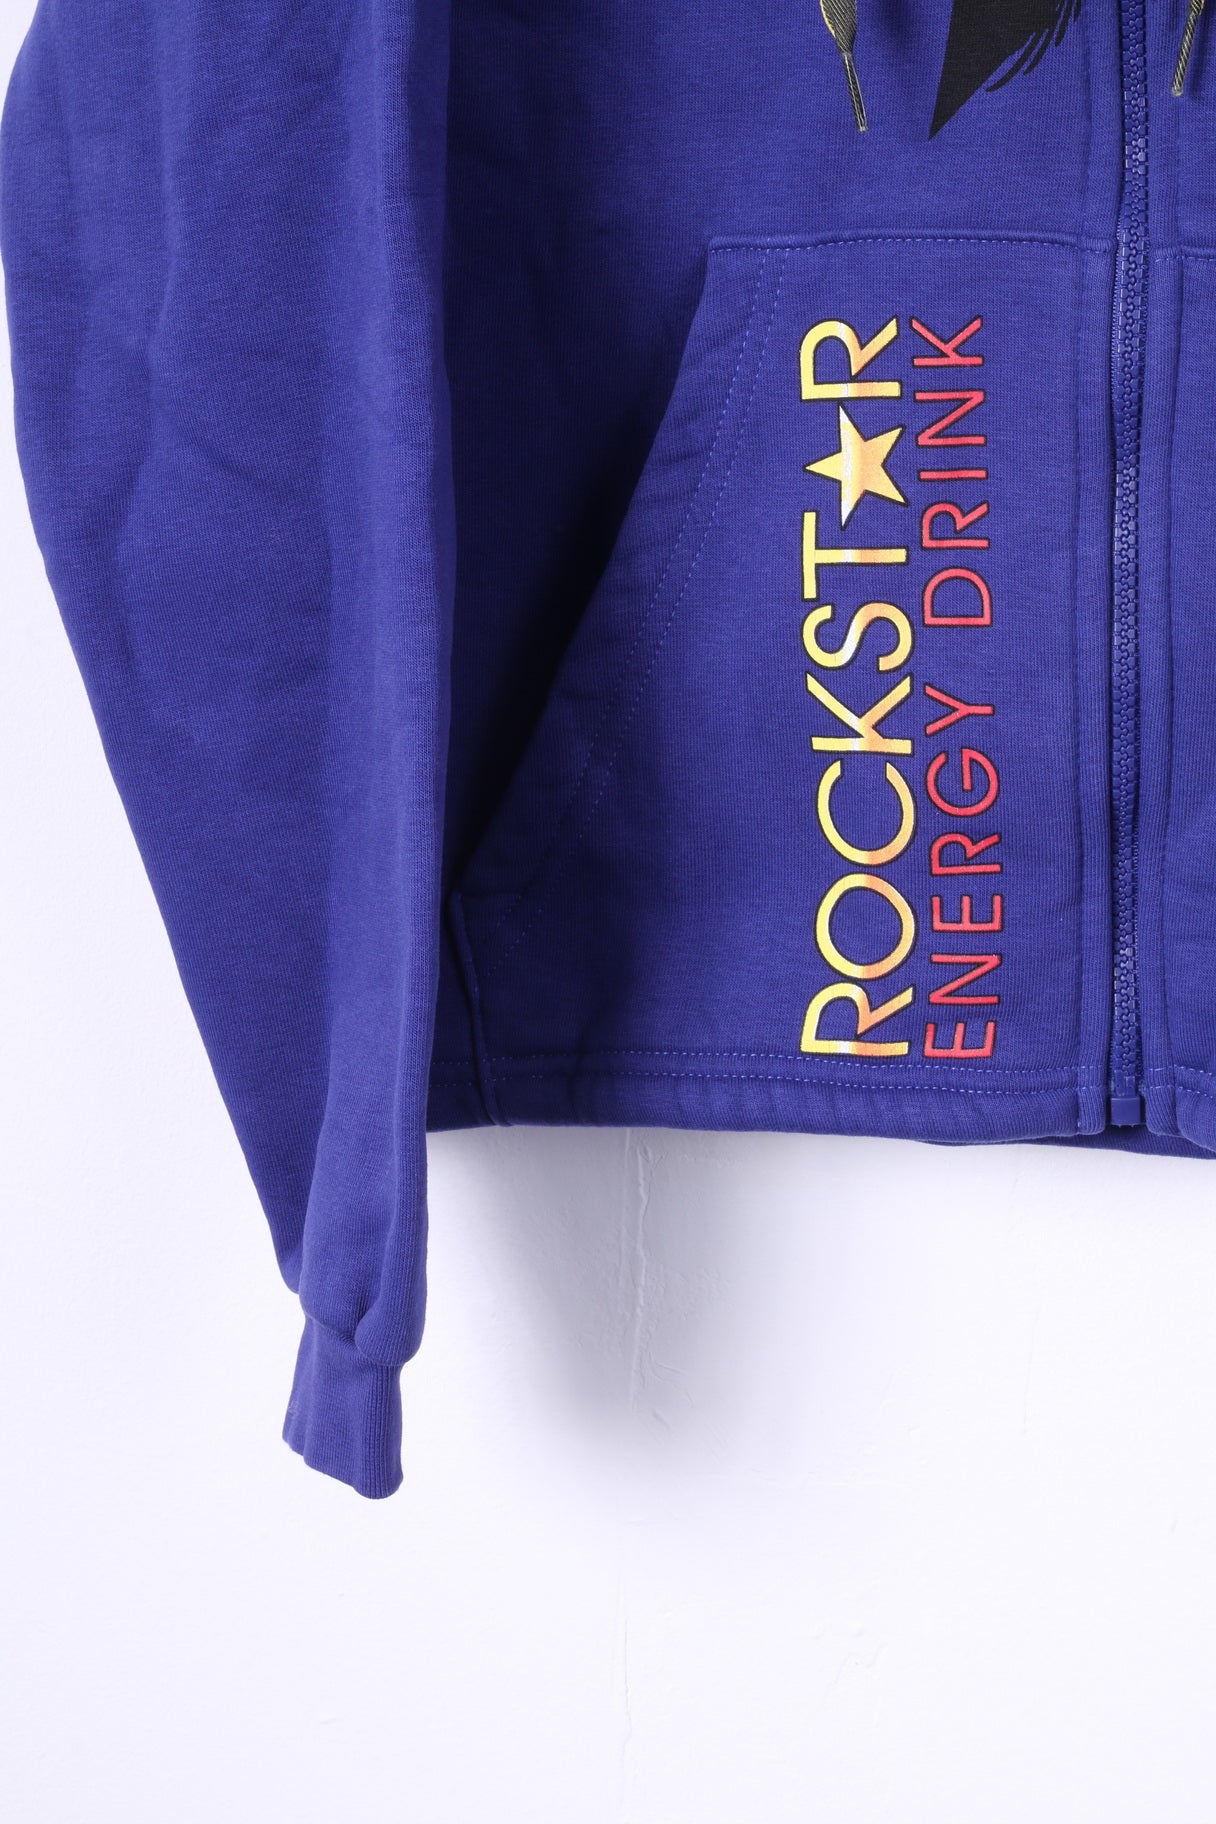 Rockstar Energy Drink Femmes M Sweat-shirt Violet Graphique À Capuche Fermeture Éclair Complète Haut